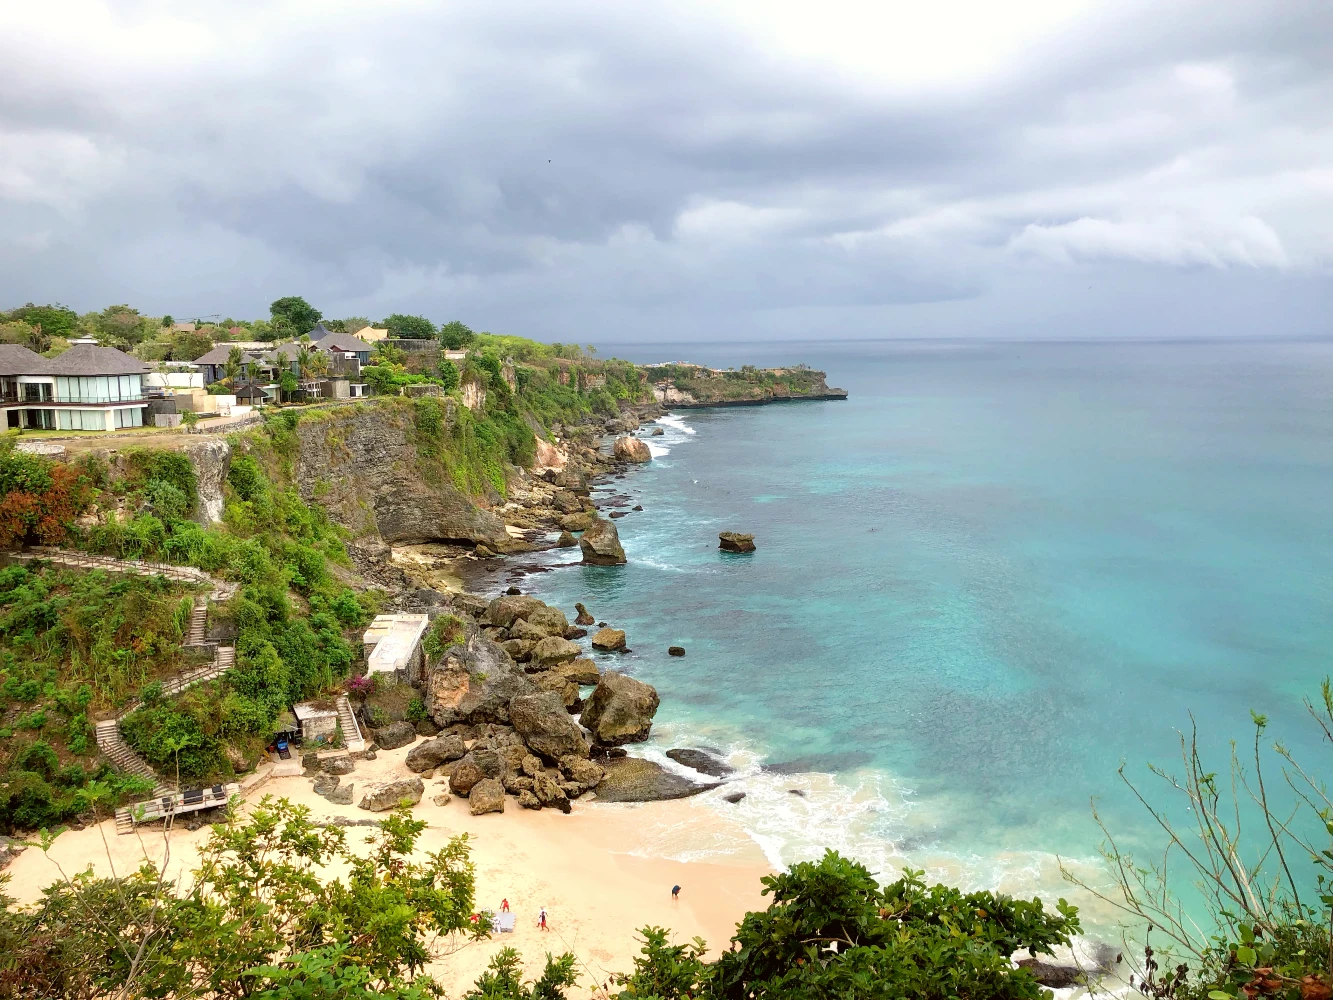 Panorama Bentang alam pantai kubu jimbaran